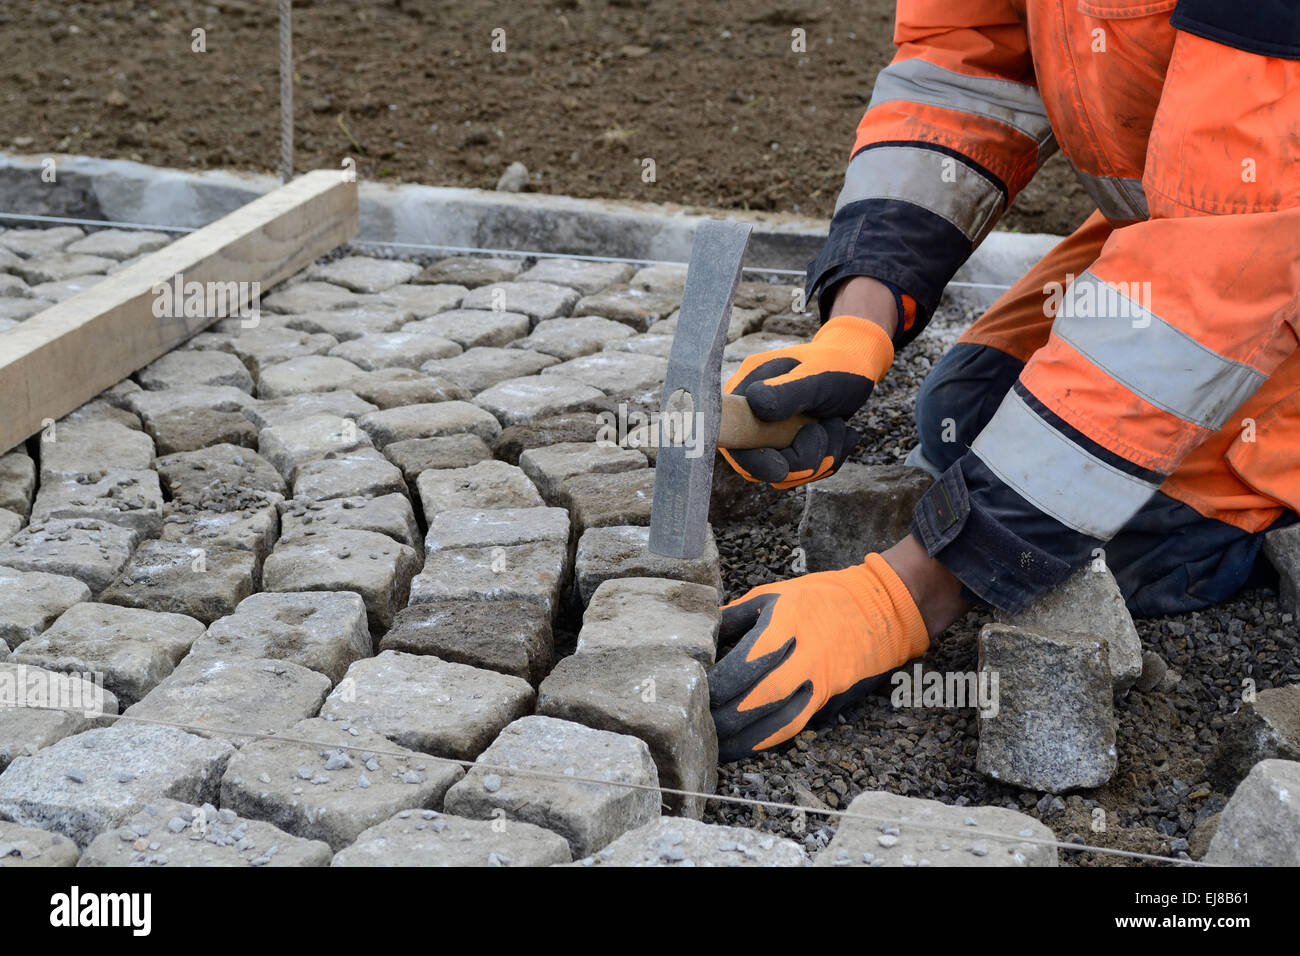 Pavers laid paving stones Stock Photo